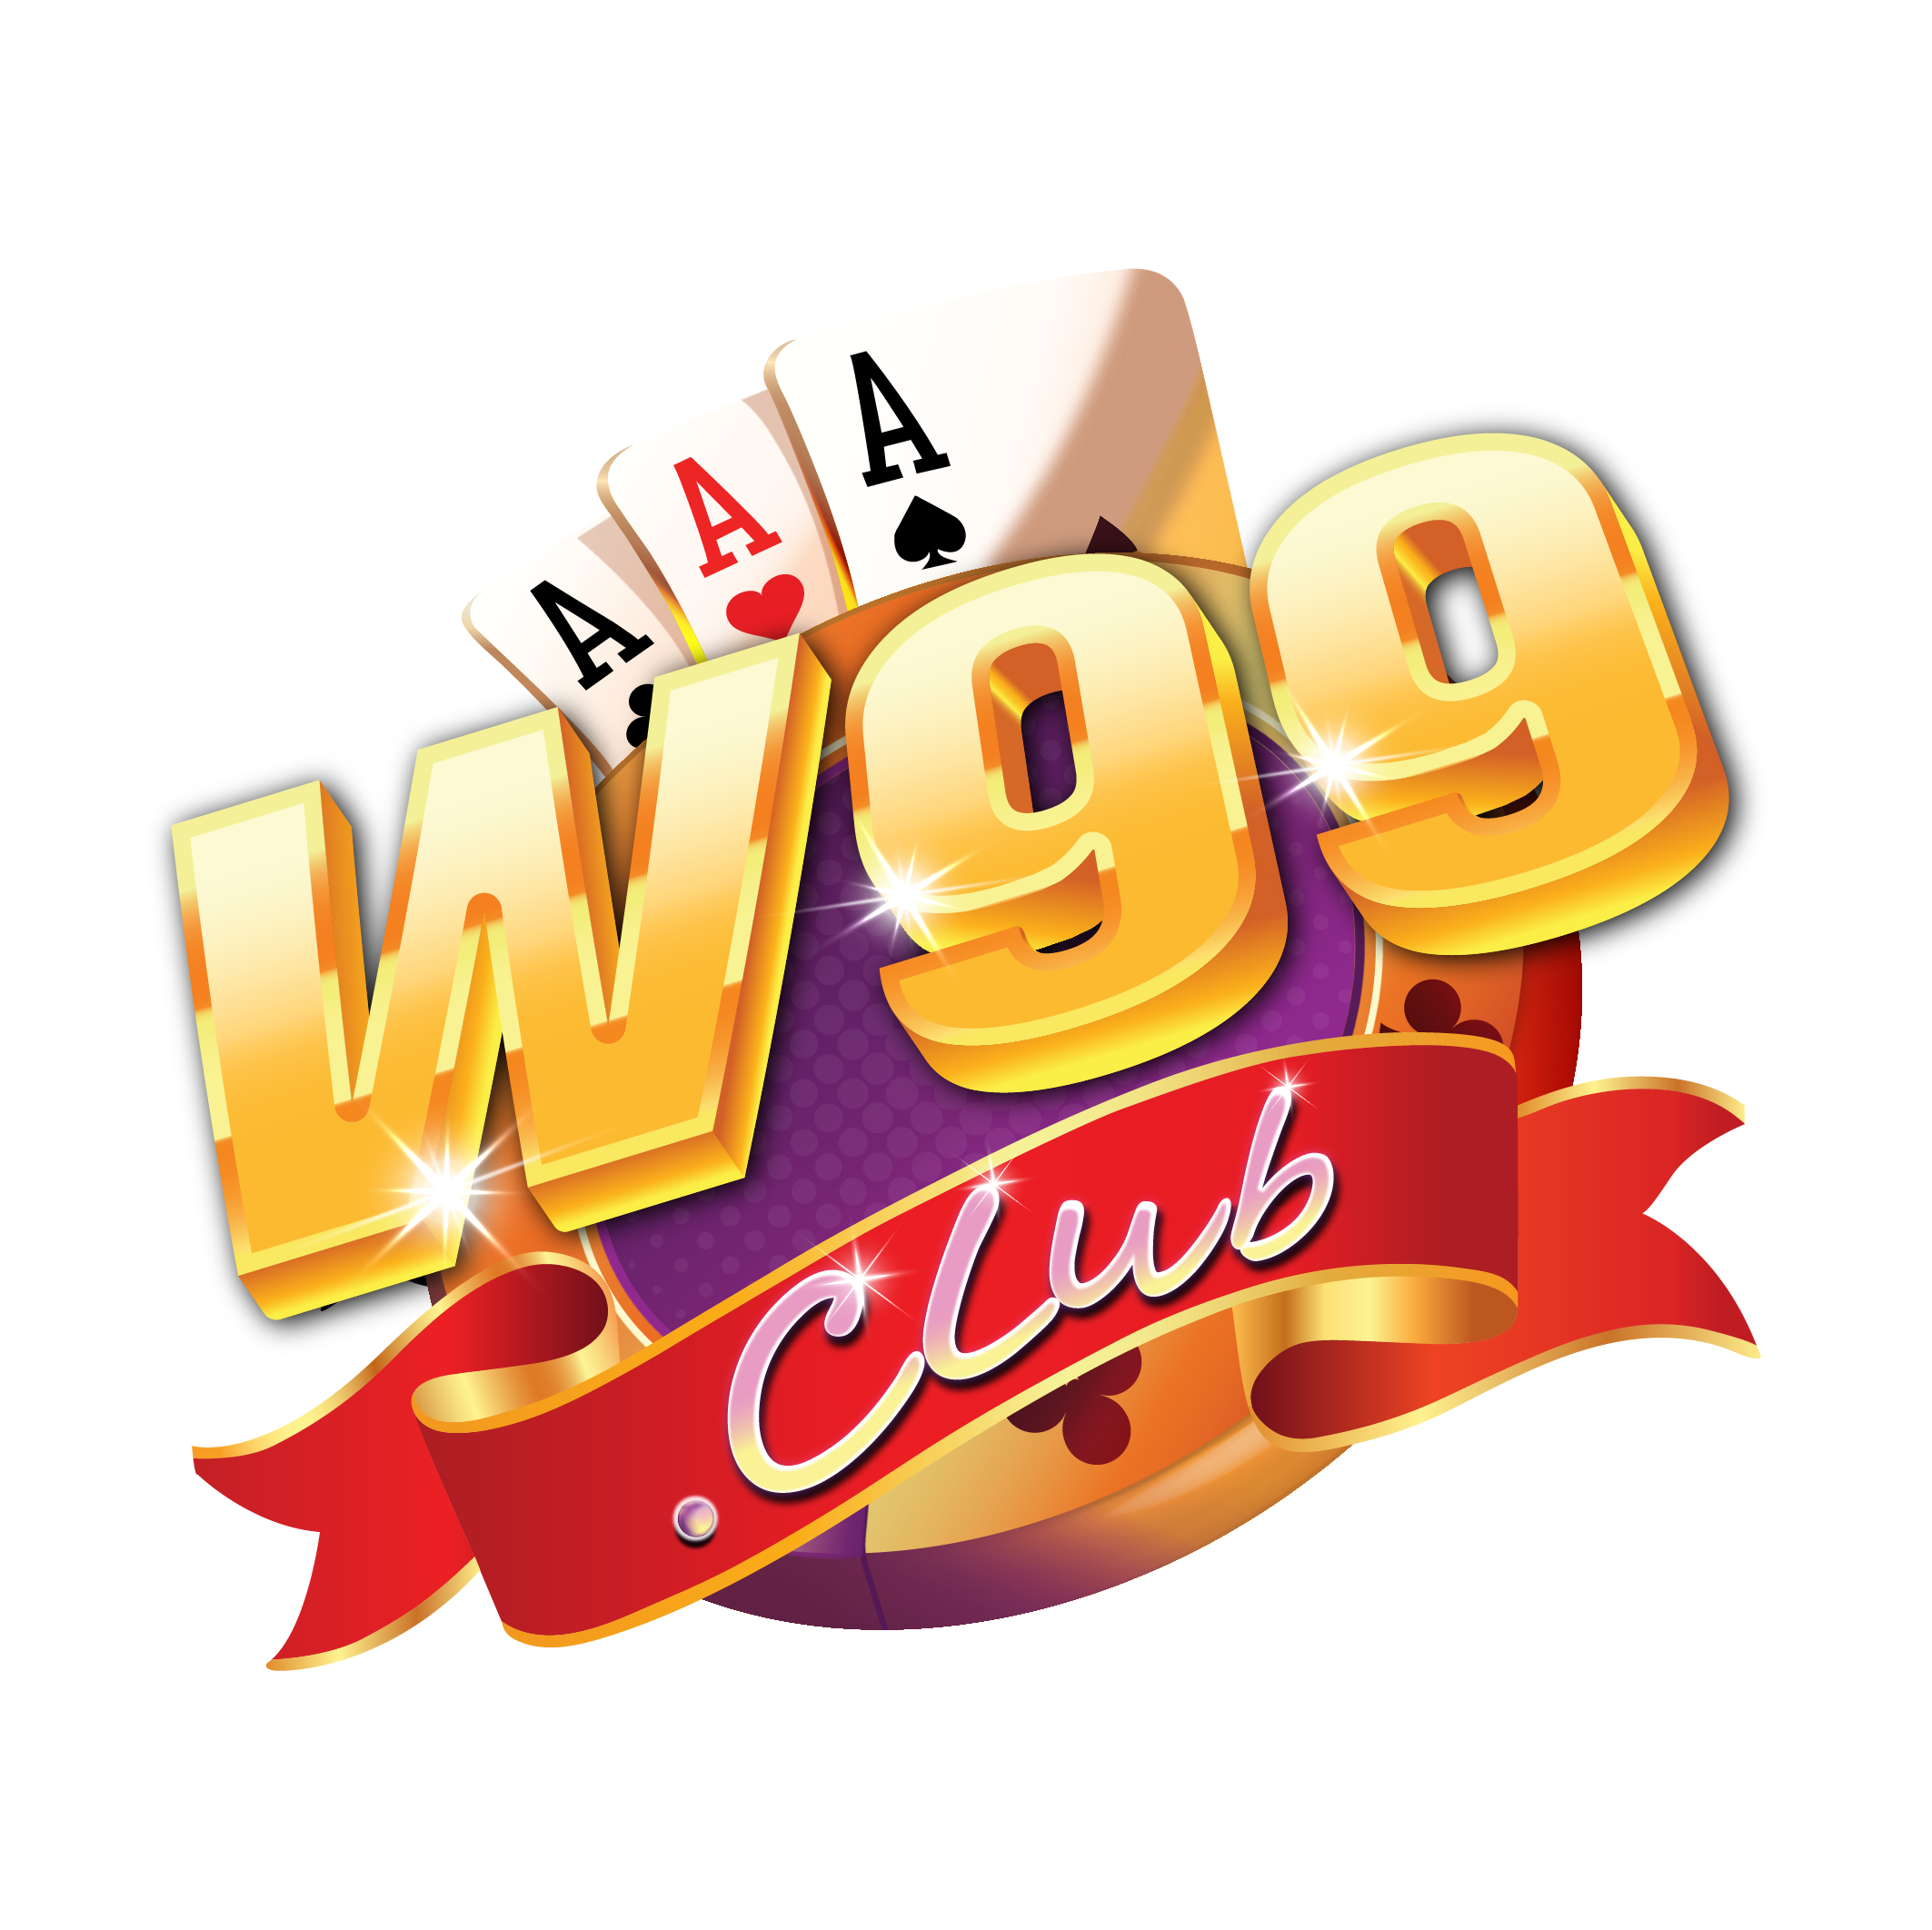 W99 Club - Game bài đổi thưởng online uy tín số 1